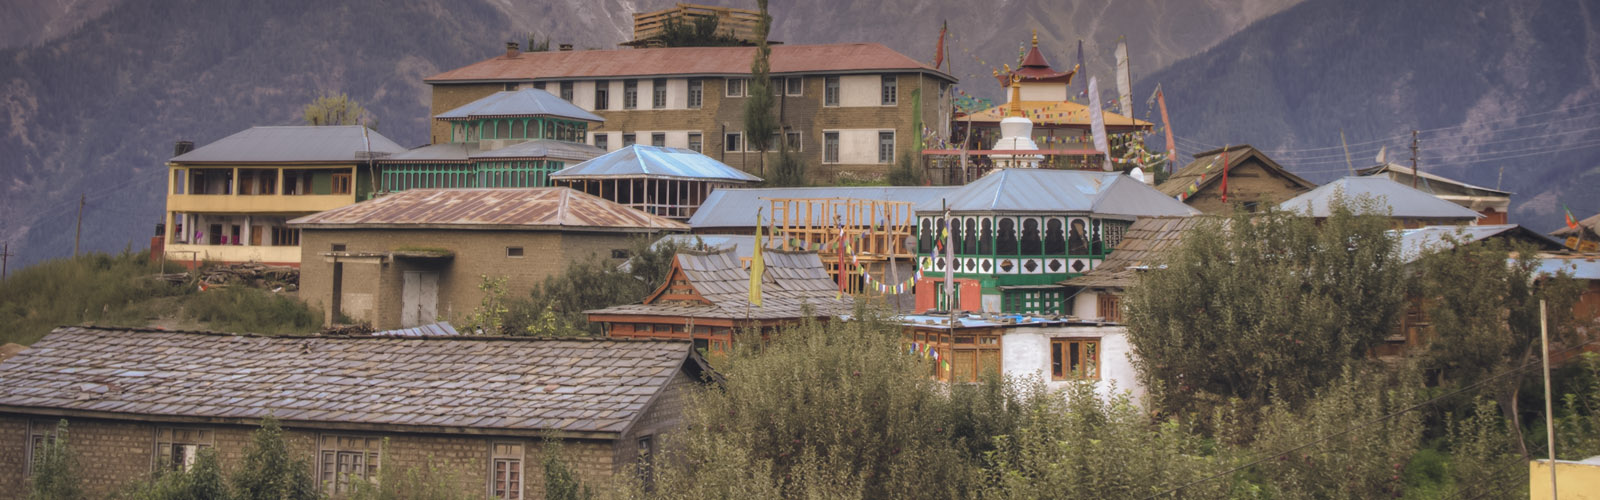 Kalpa Spiti valley